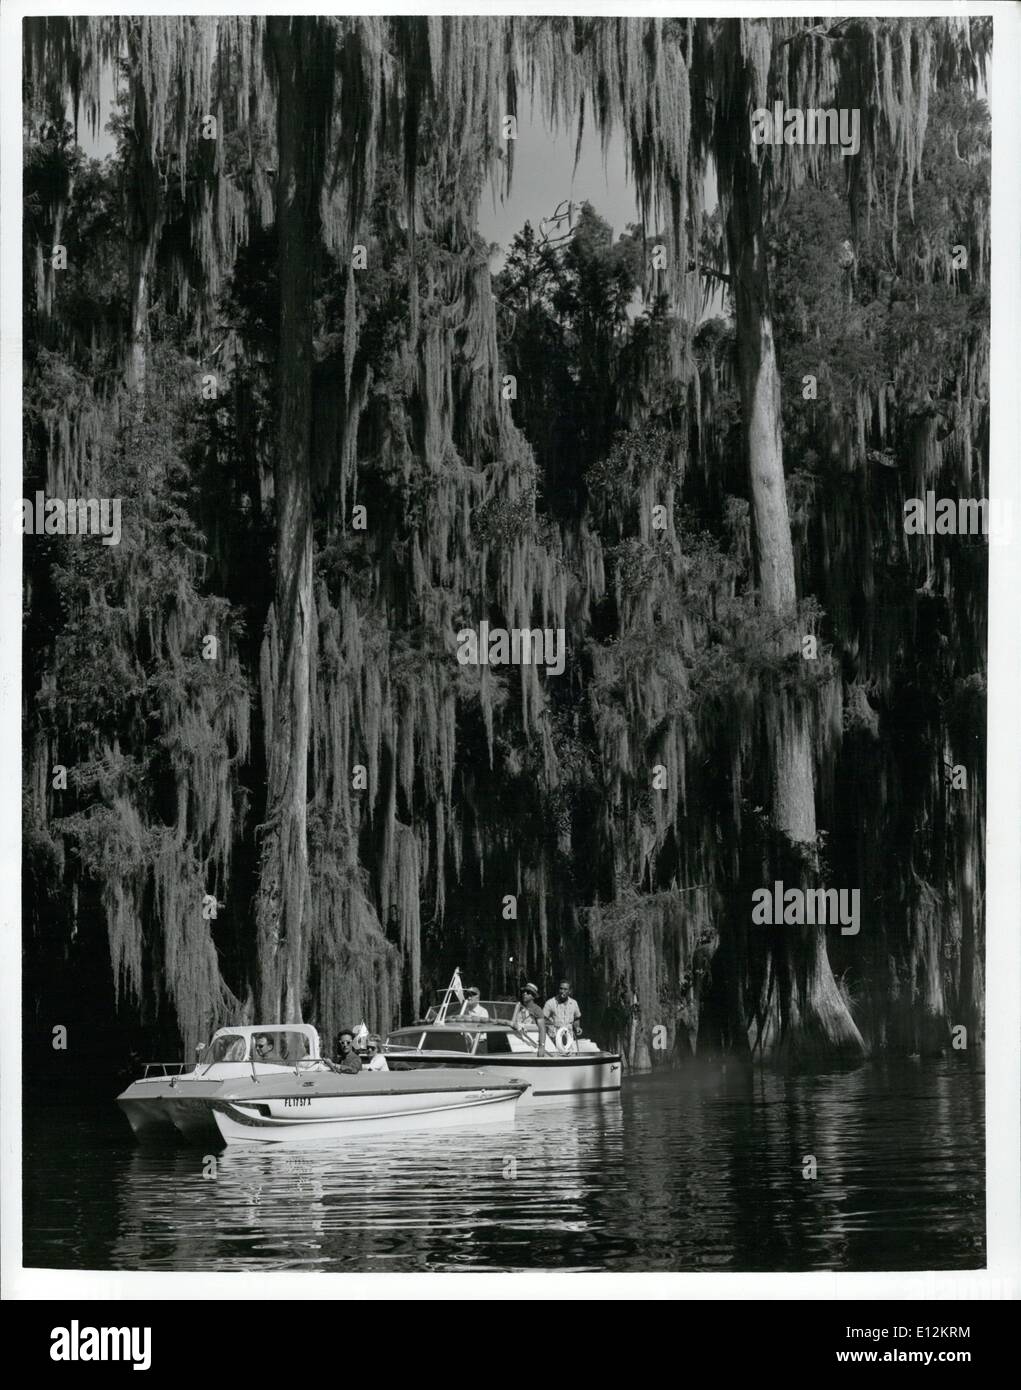 24 février 2012 - La beauté luxuriante de moss-arbres drapés ajoute au plaisir de la navigation de plaisance sur les voies navigables de la Floride. Banque D'Images